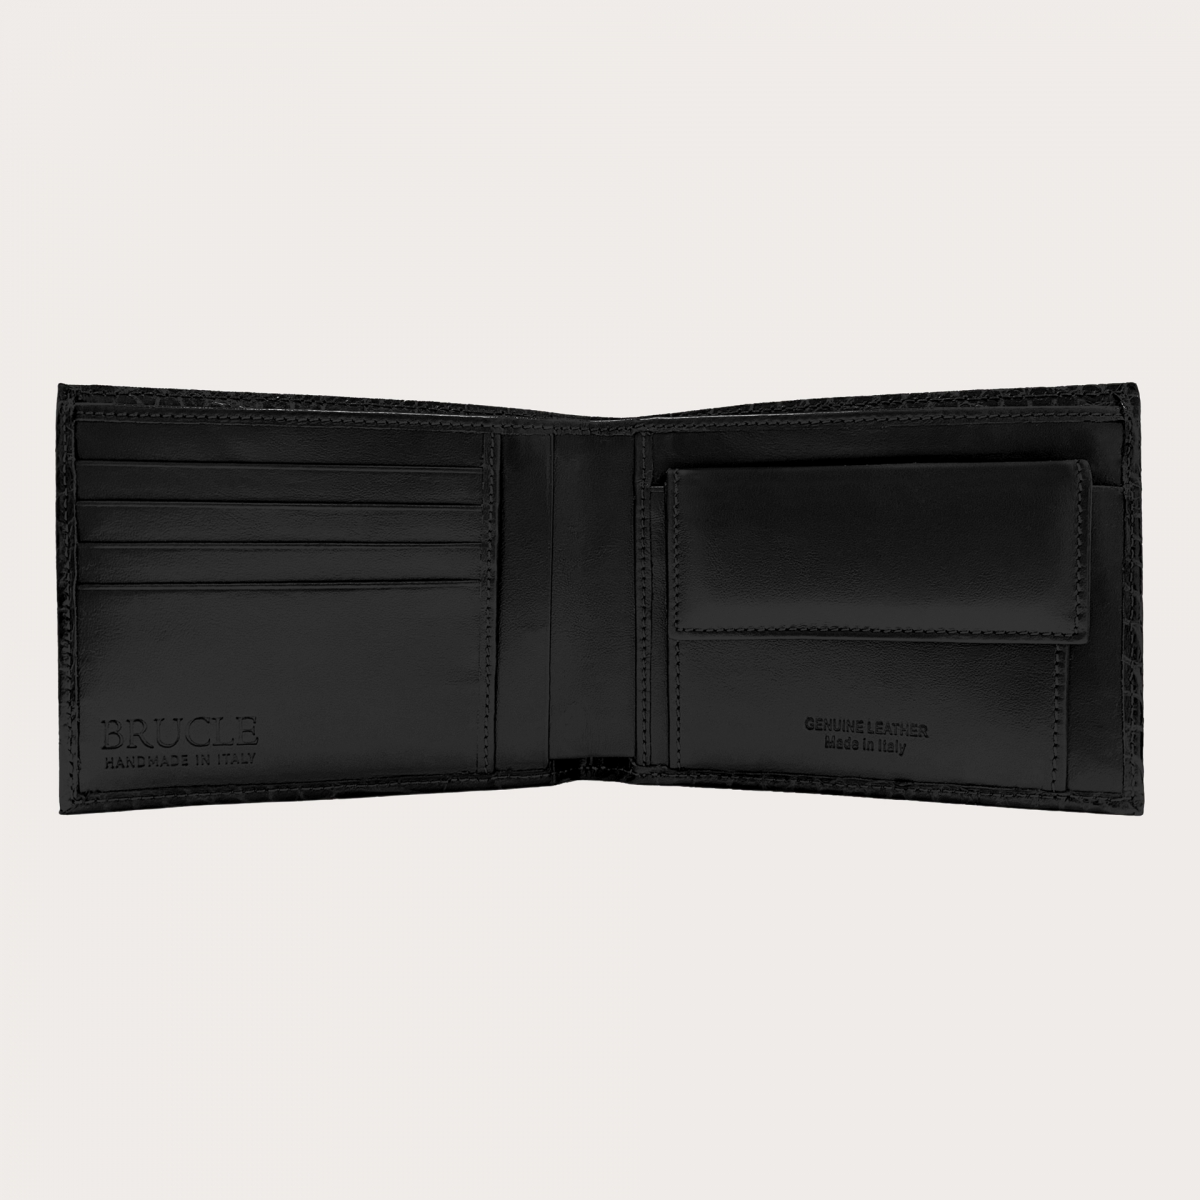 Portefeuille à rabat en cuir avec portemonnaie, noir imprimé croco